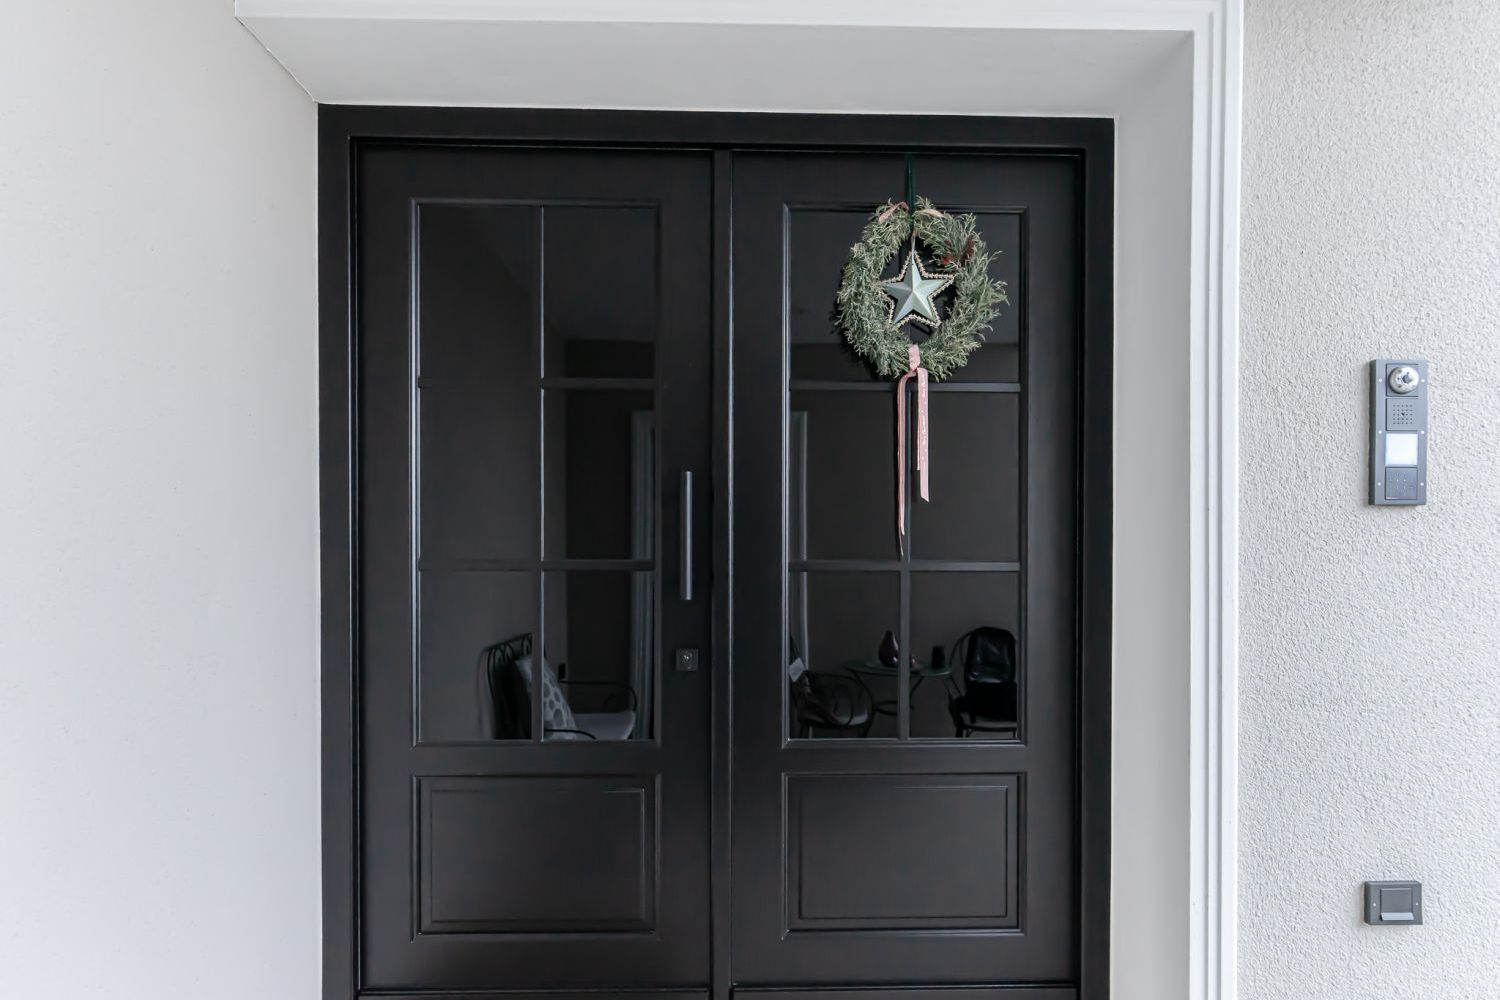 Referenz-schwarze-Holzhaustür-klassische-Rahmentür-Glasfüllungen-mit-Sprossen-Sichtschutzglas-Spiegelglas